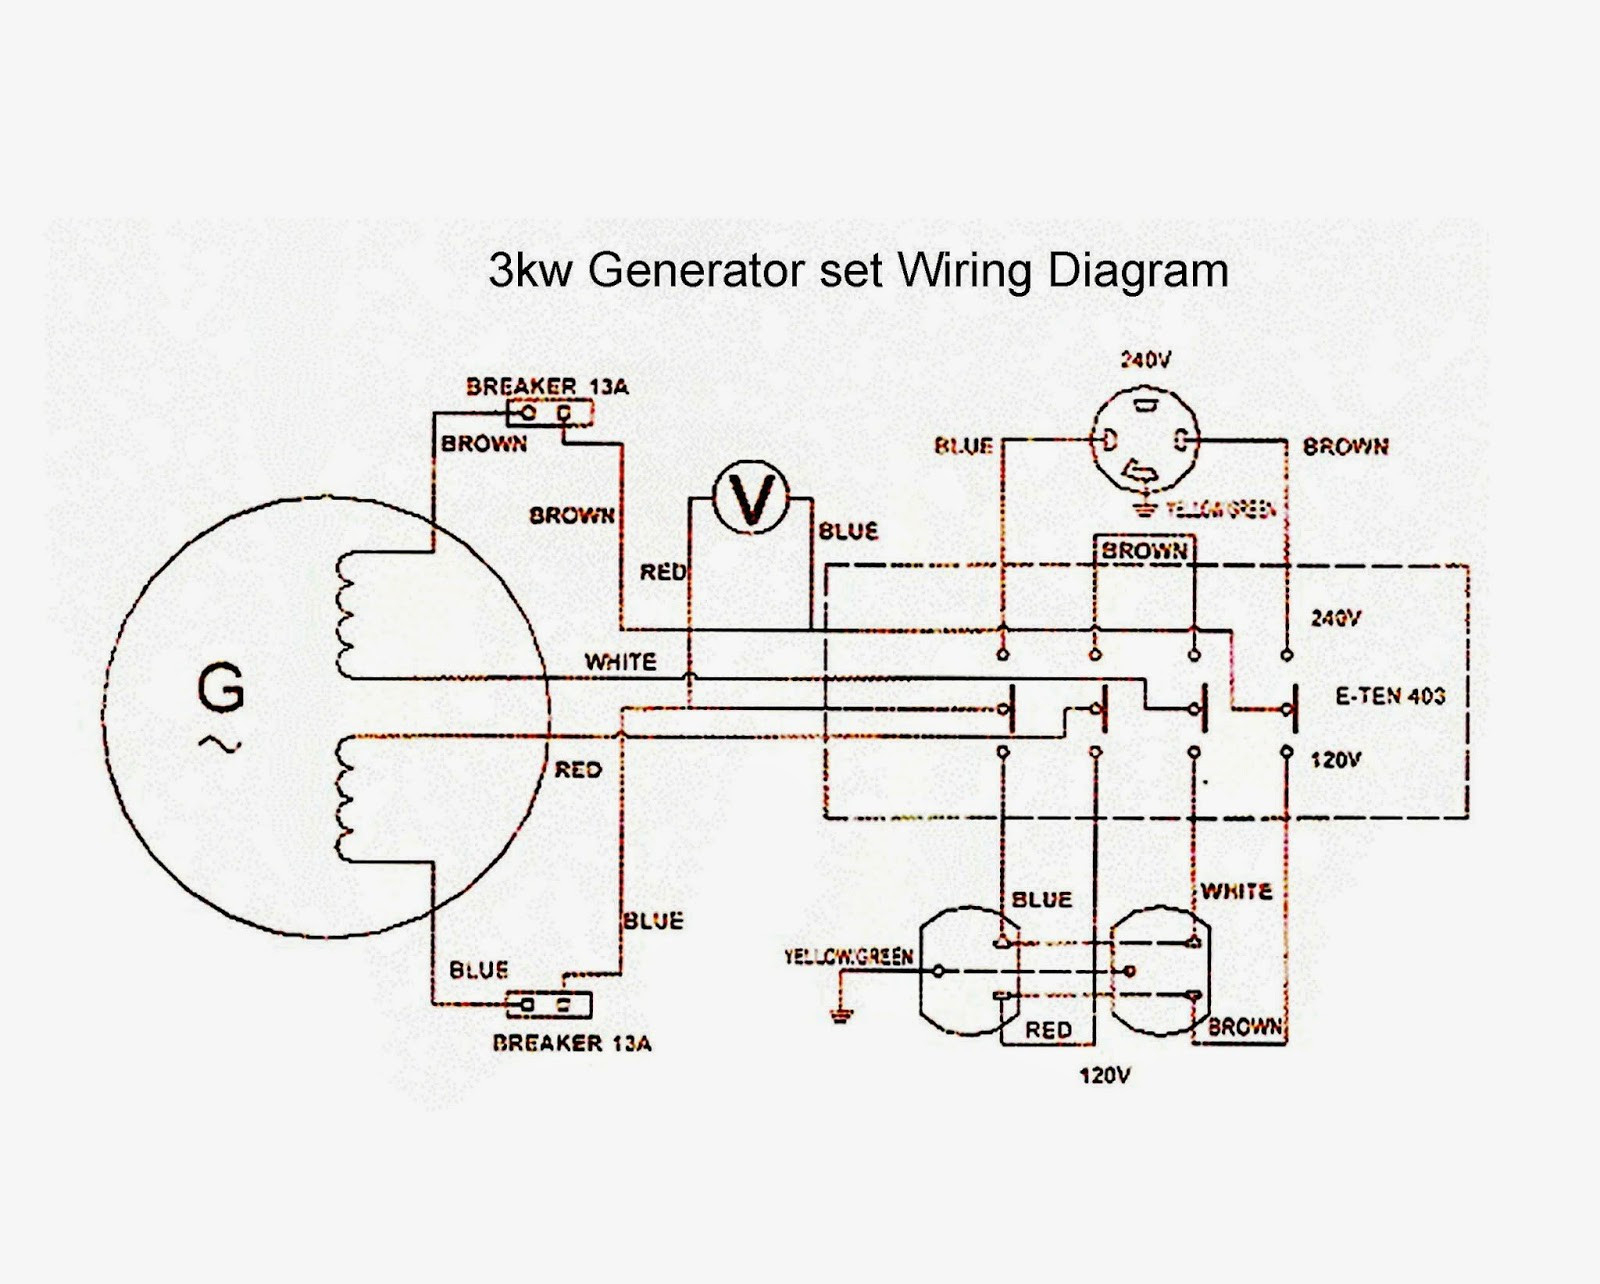 Circuit Diagram Maker Circuit Diagram Builder Wiring Diagram Shw